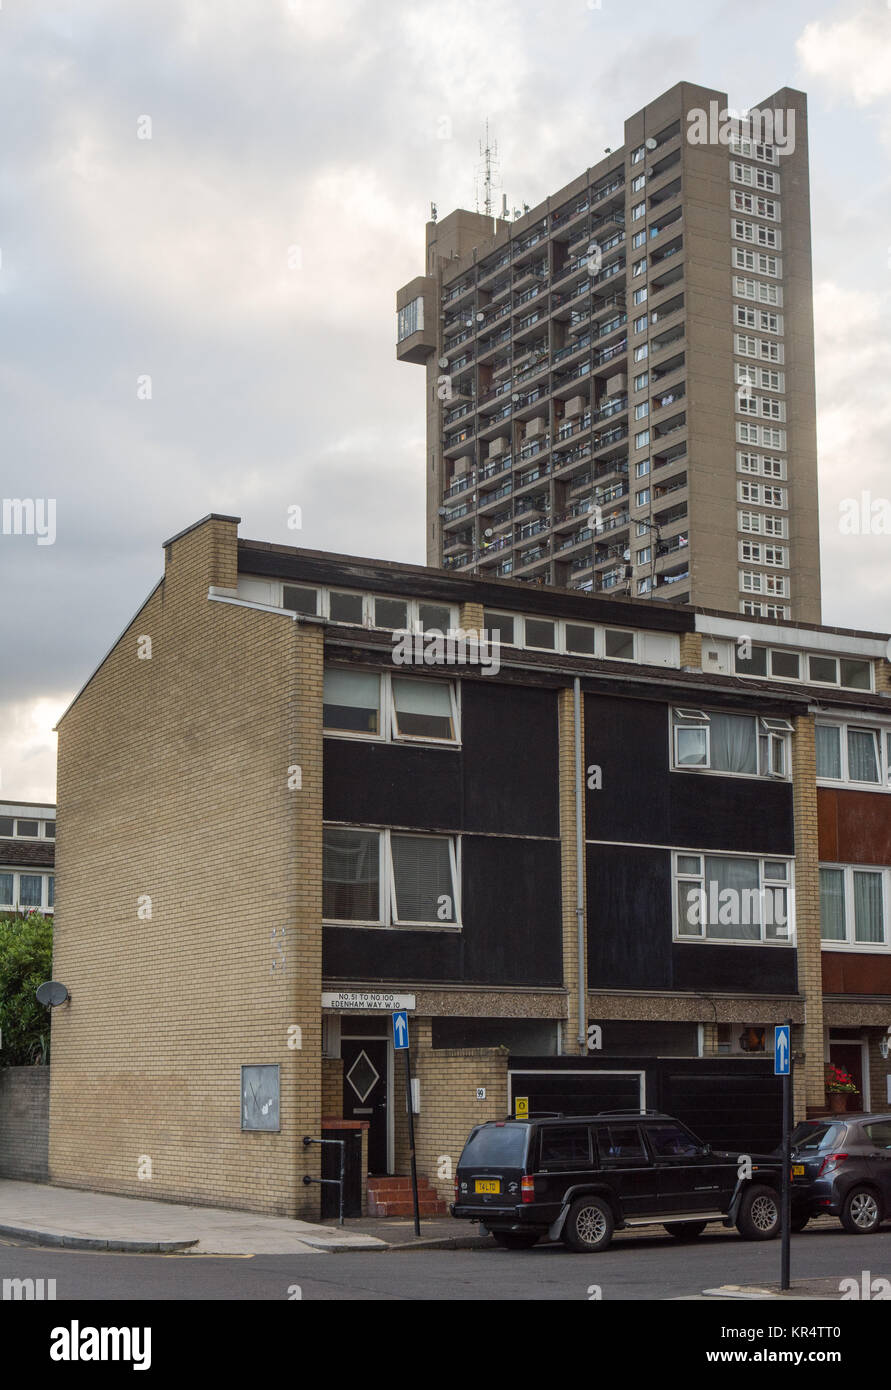 Londres, Angleterre, Royaume Uni - 21 juin 2016 : Le brutaliste Trellick Tower et offres de logement social dans le nord ouest de Londres, Kensington. Banque D'Images